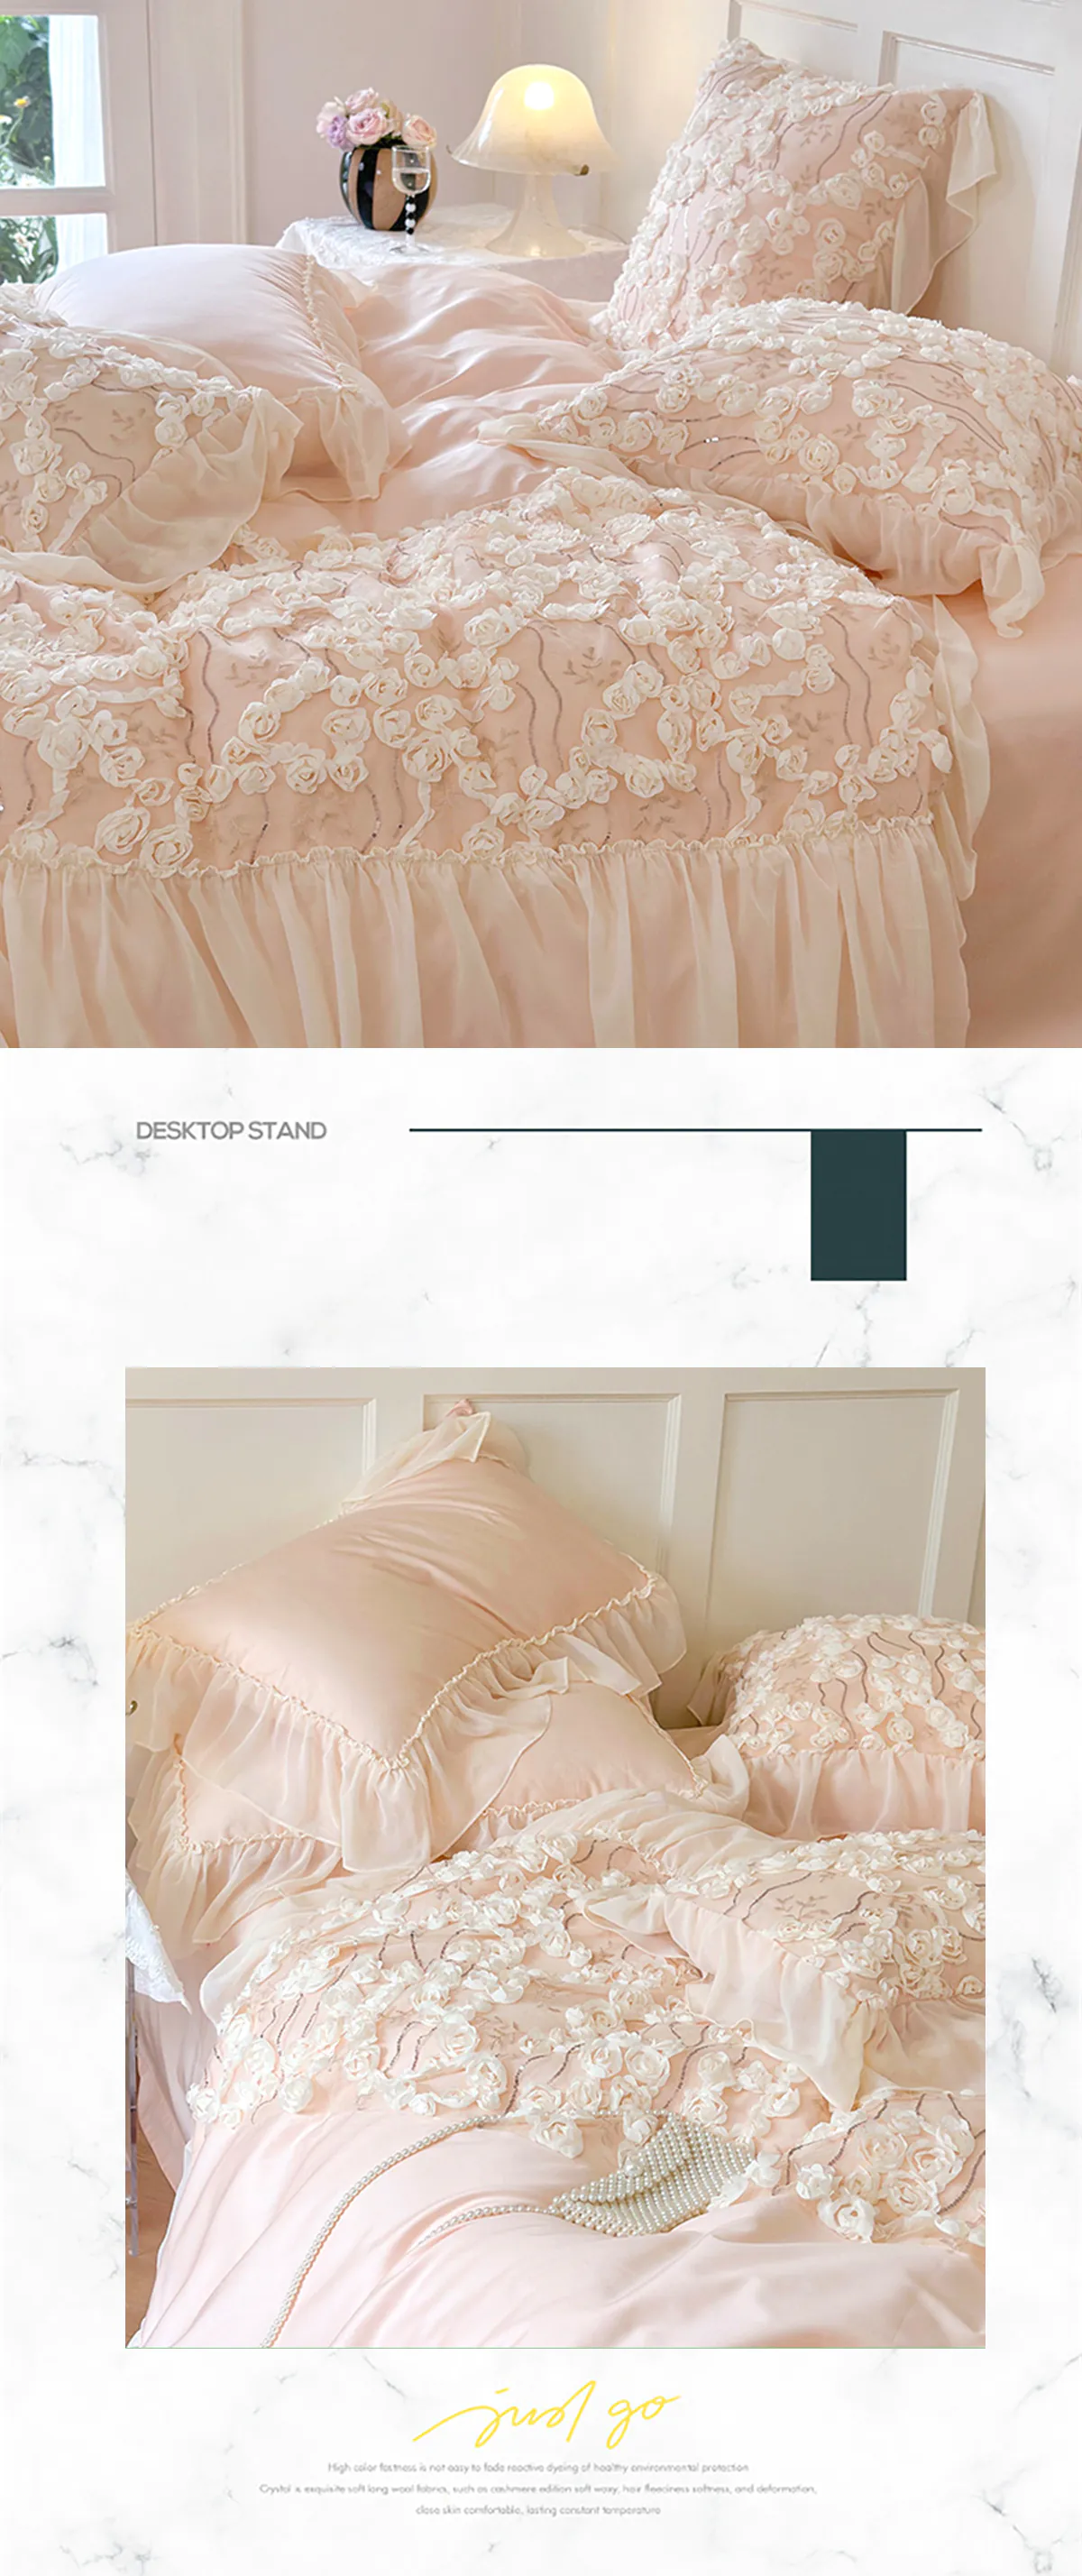 Aesthetic-140S-Long-Staple-Cotton-Chiffon-Lace-Floral-Bedding-Set18